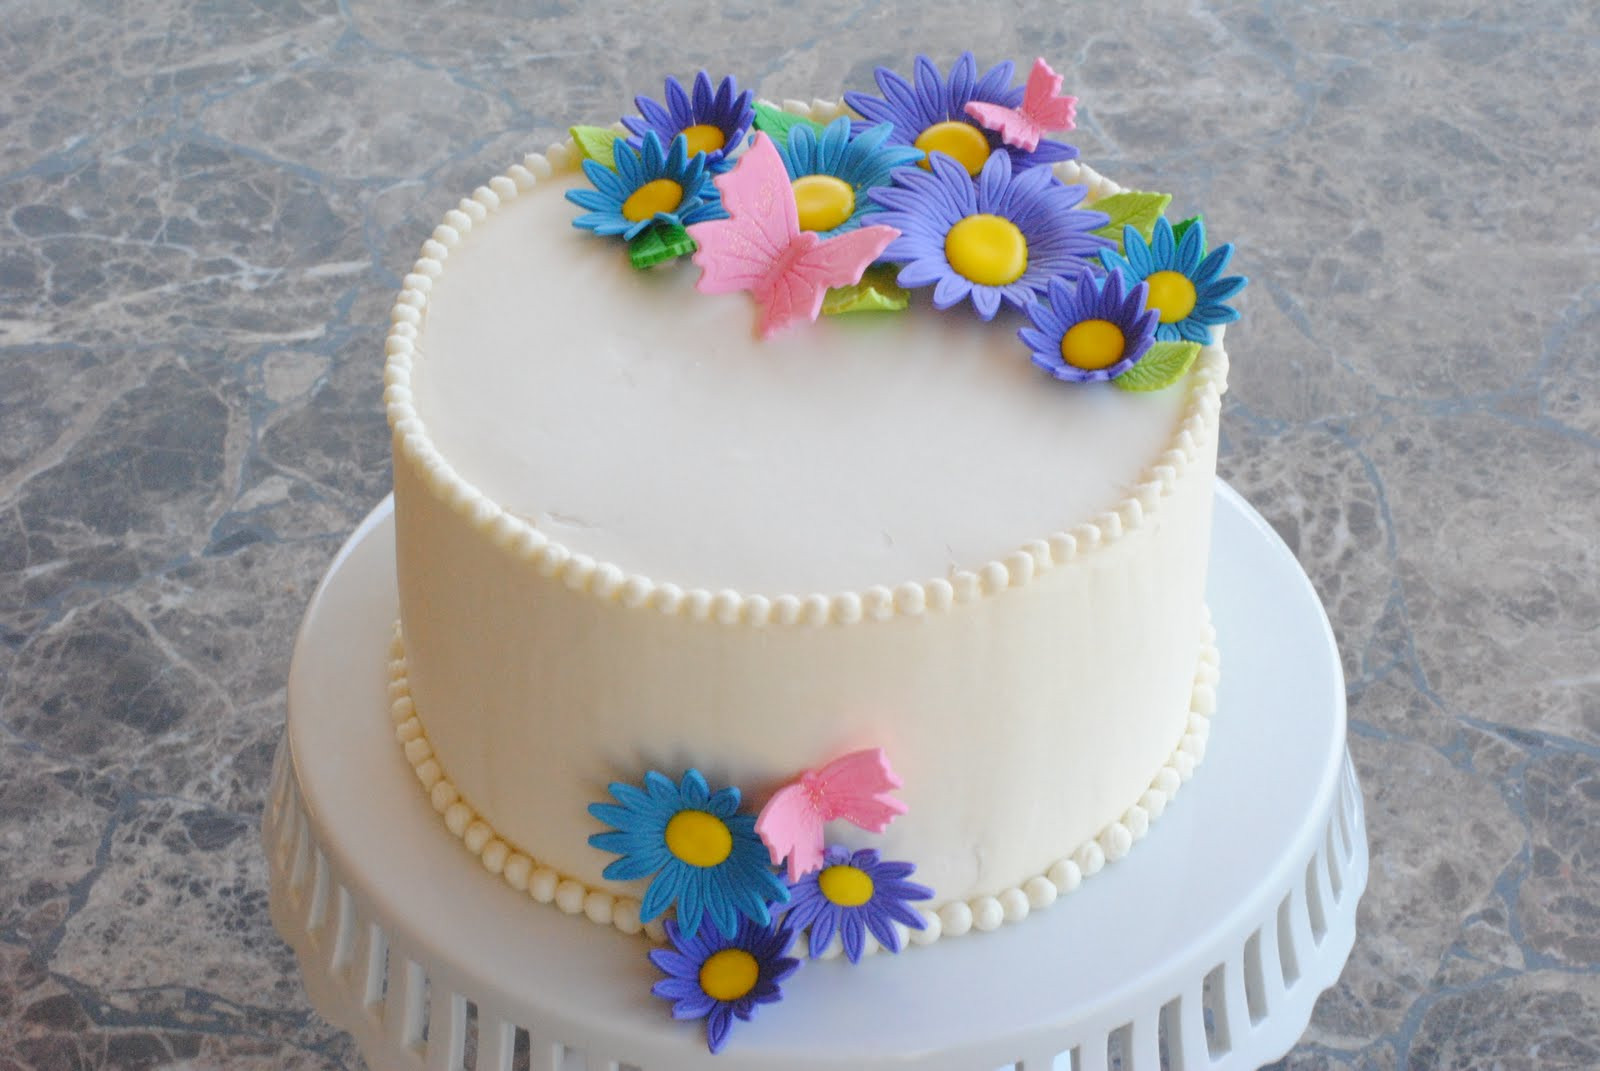 Simple Birthday Cake Ideas
 A Simple Birthday Cake My FaVoriTe CaKe PlaCe